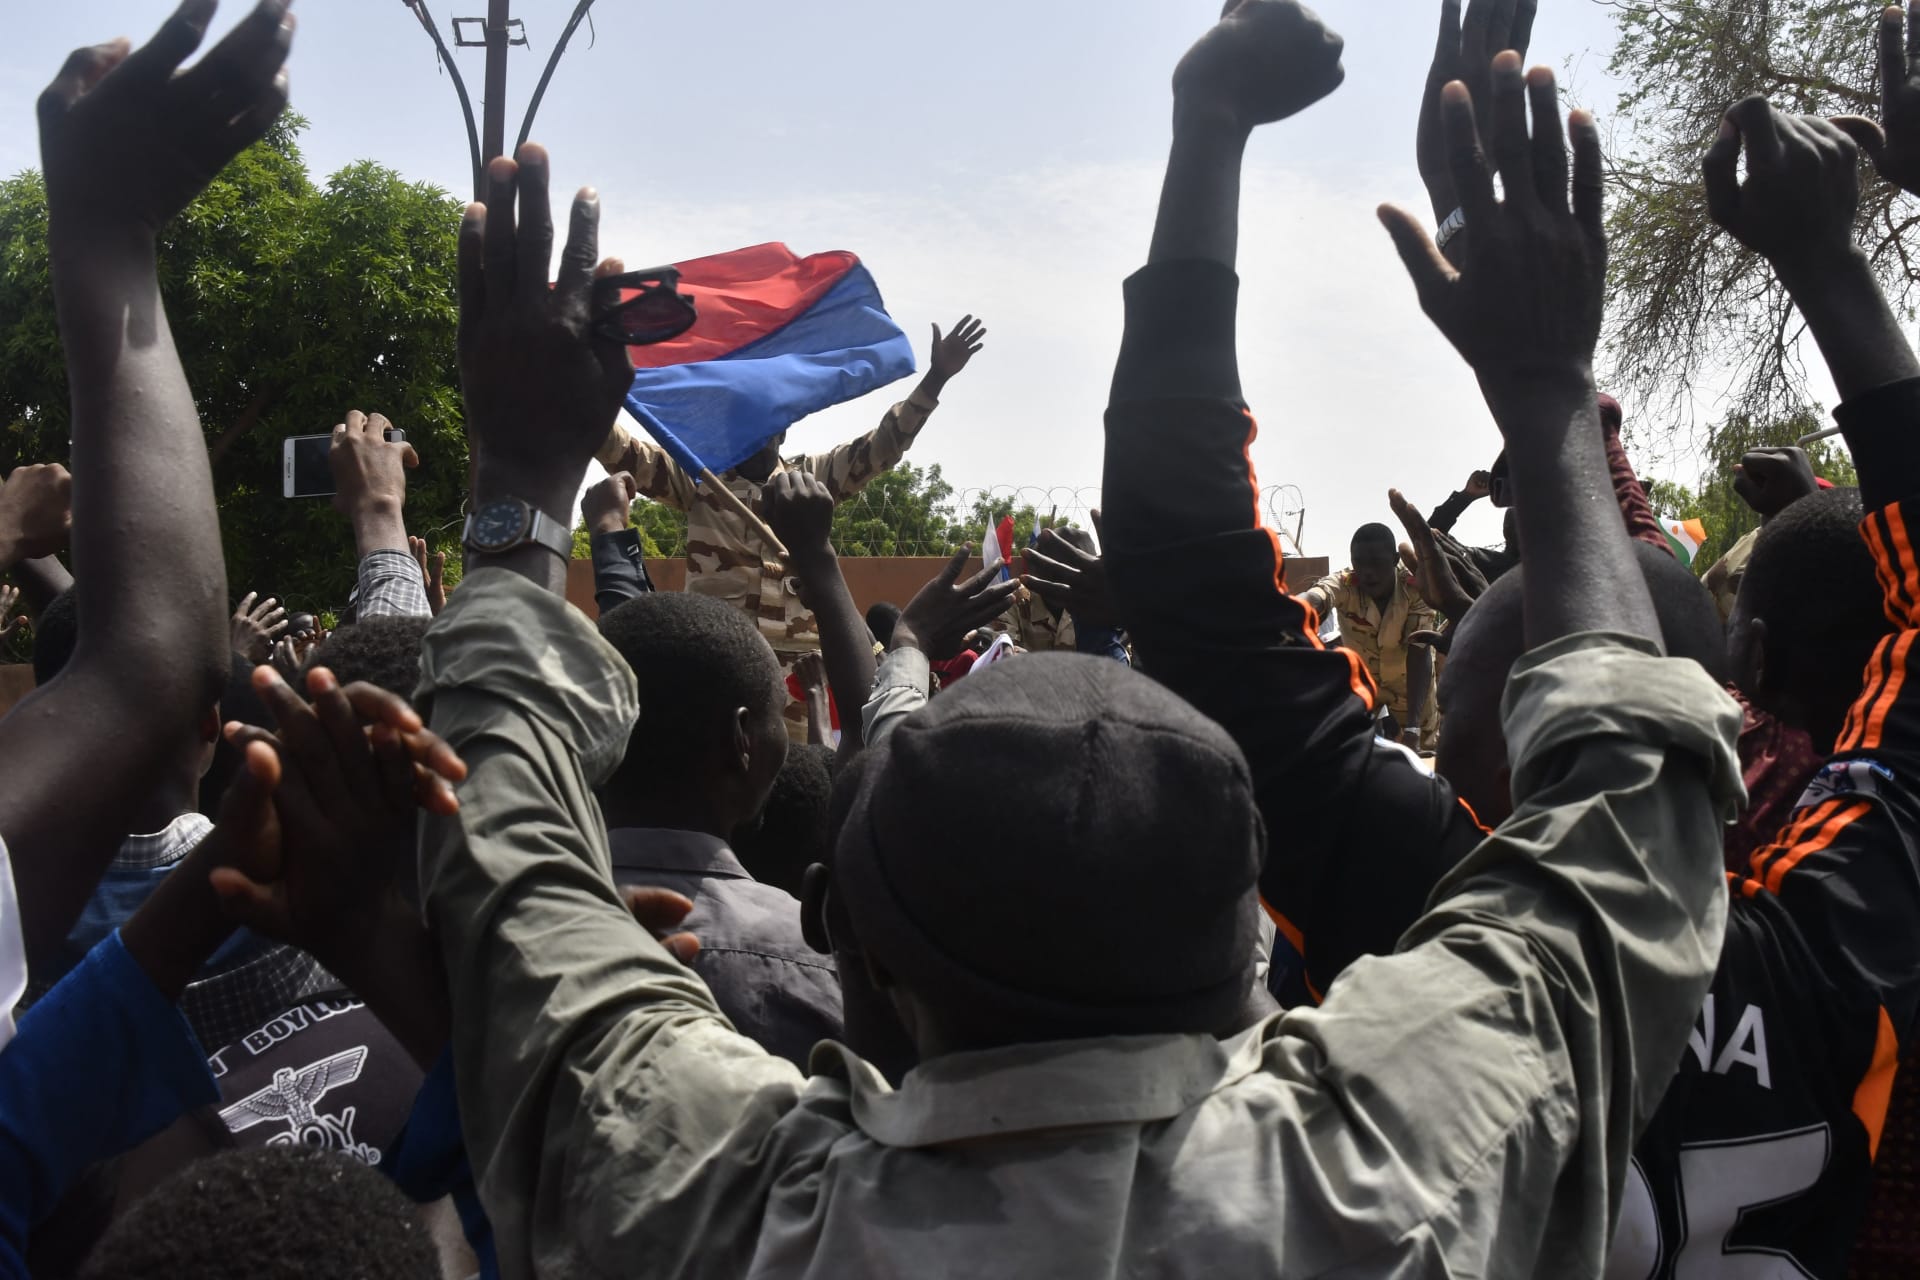 الإيكواس: مهمتنا للاجتماع مع المجلس العسكري في النيجر "أُجهضت" وسنتخذ جميع الإجراءات لاستعادة النظام الدستوري